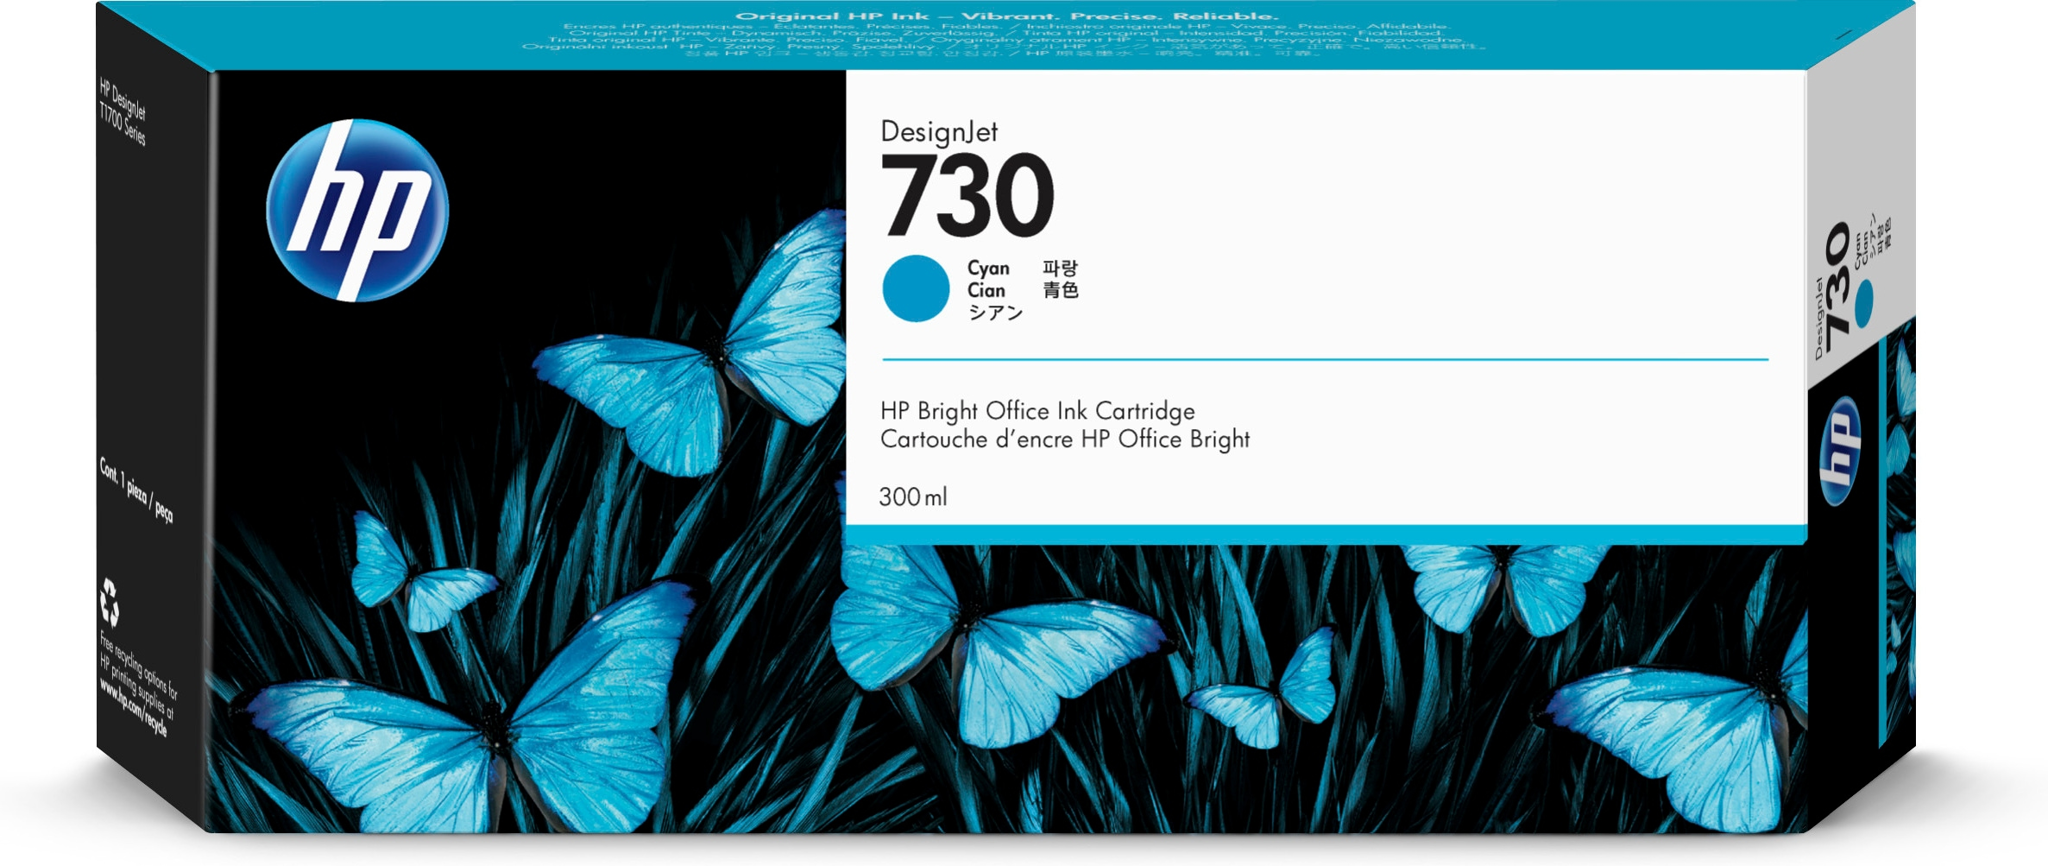 Bild von HP 730 DesignJet Druckerpatrone Cyan 300 ml - Tinte auf Farbstoffbasis - 300 ml - 1 Stück(e)